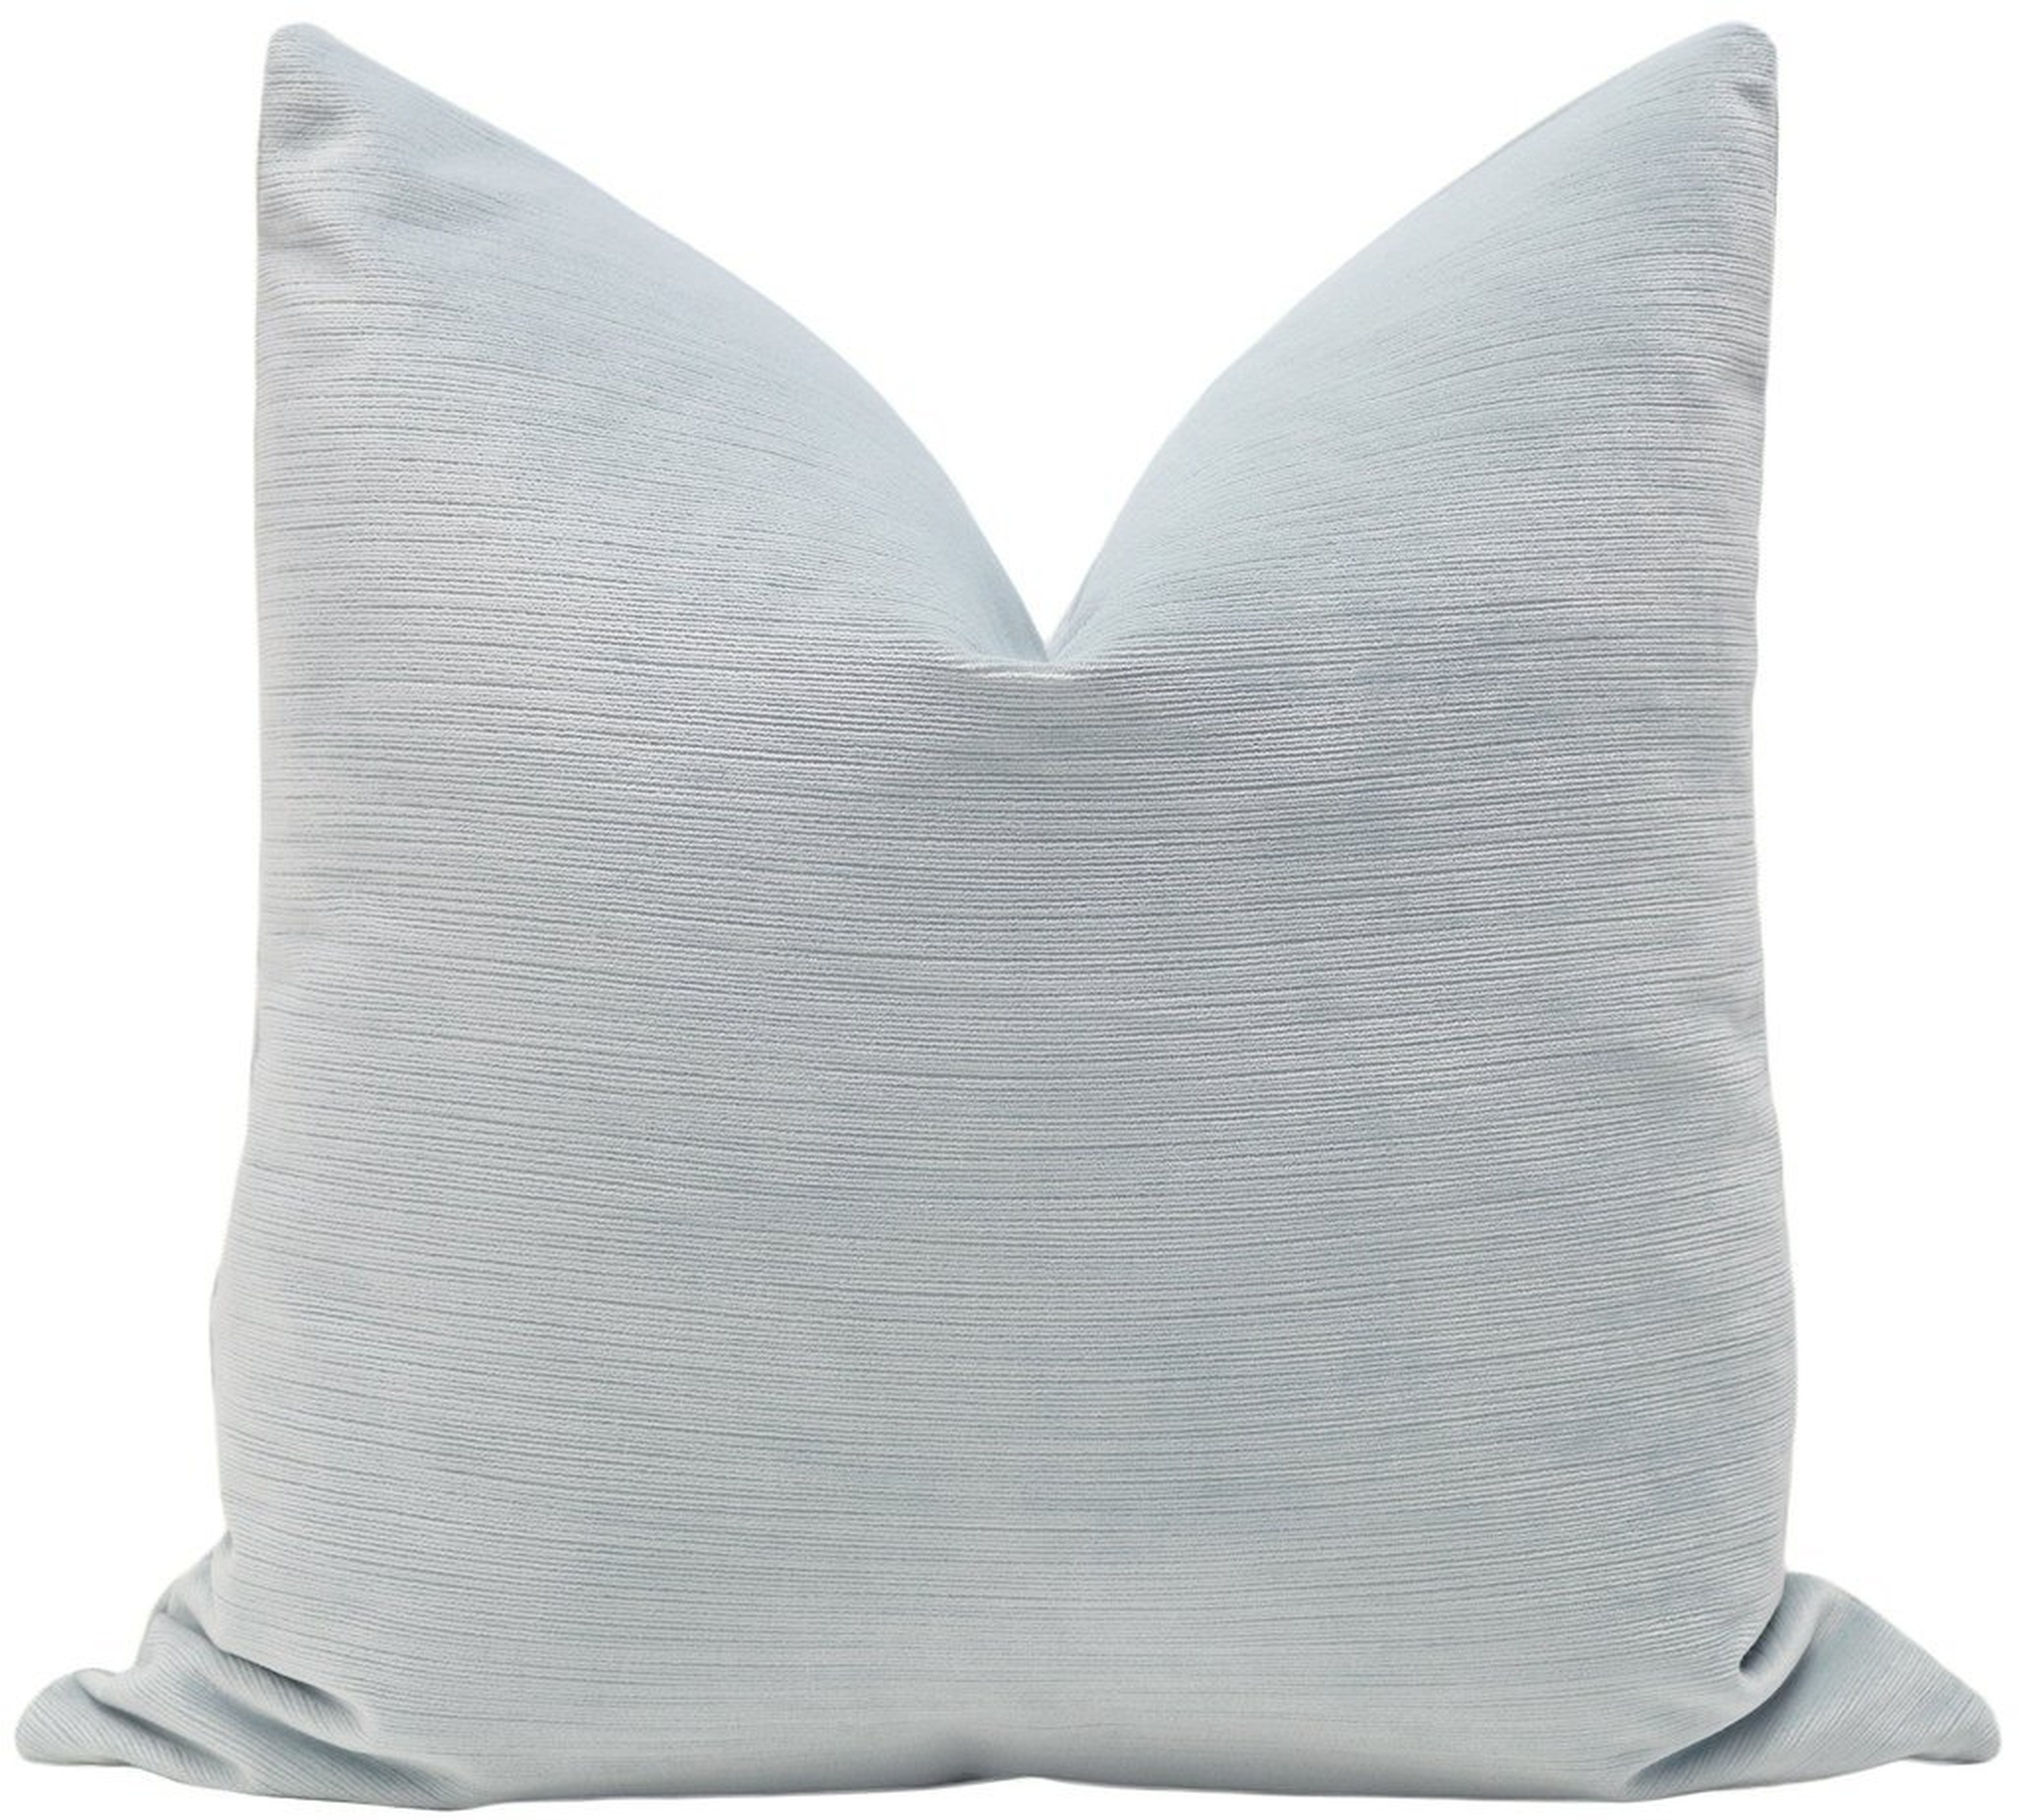 Strie Velvet Throw Pillow Cover, Mist, 18" x 18" - Little Design Company